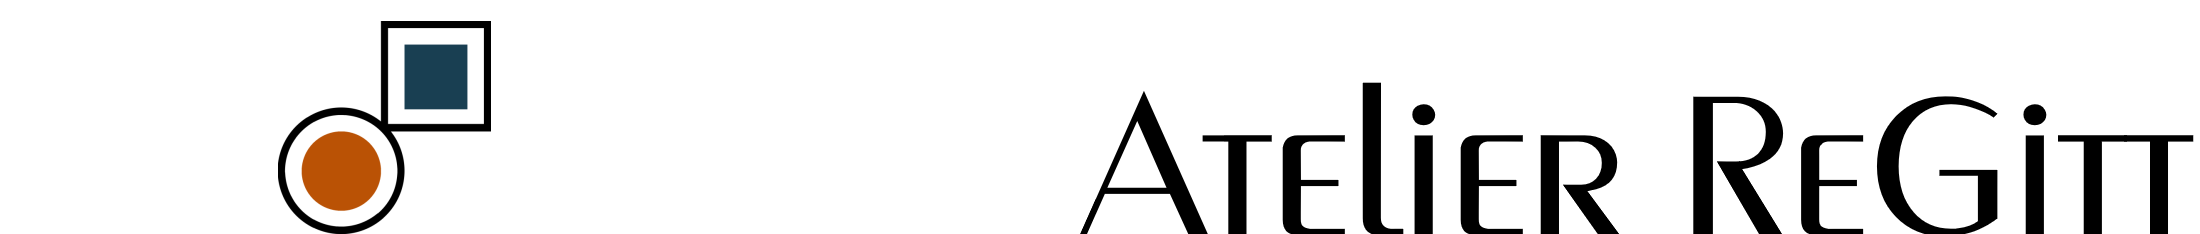 Atelier Regitt Logo